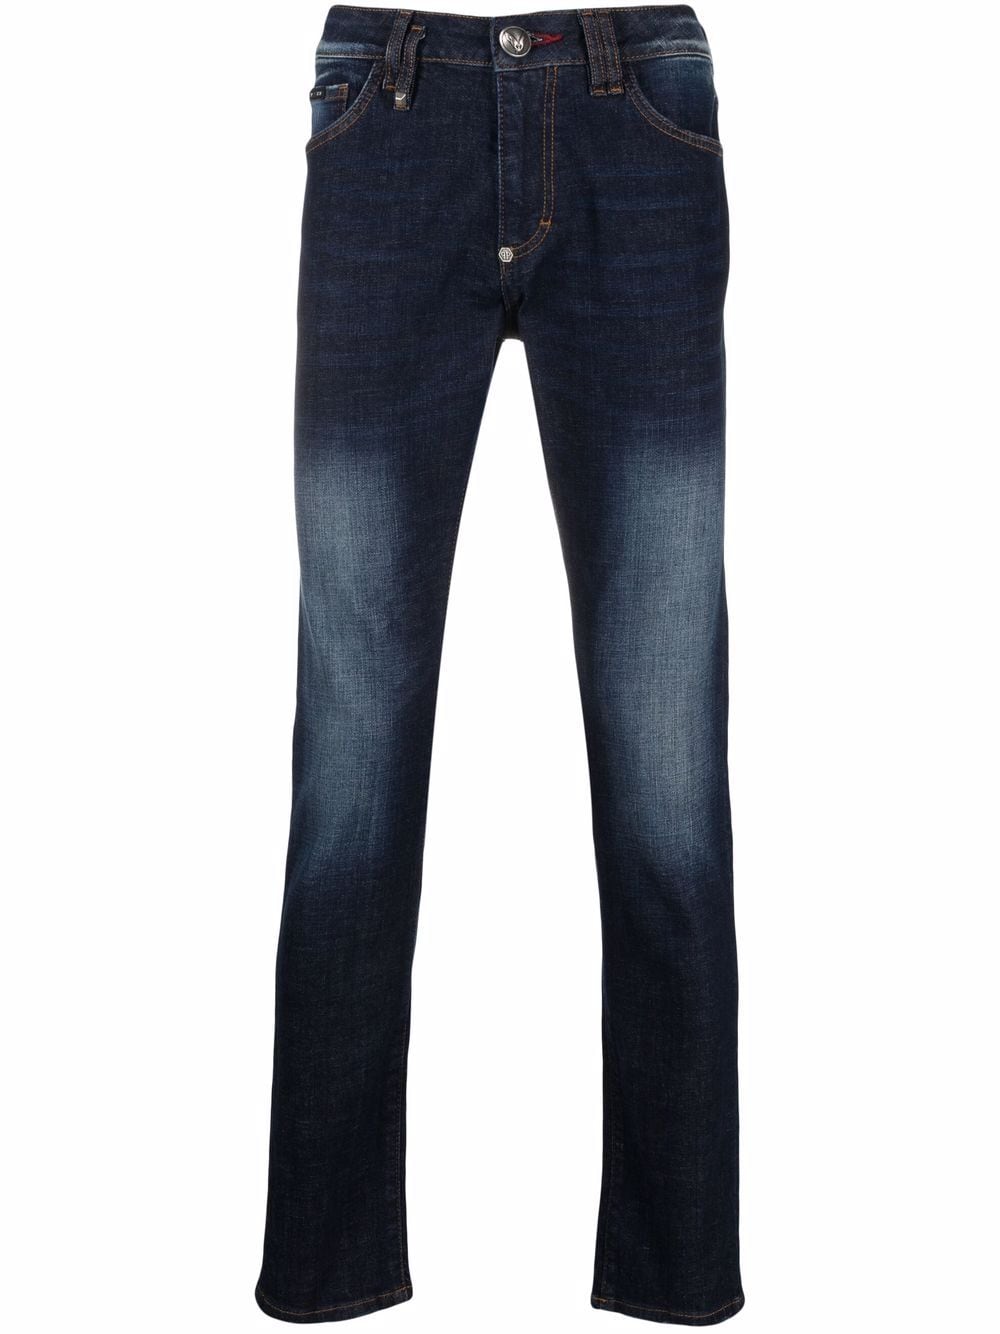 фото Philipp plein узкие джинсы institutional с заниженной талией